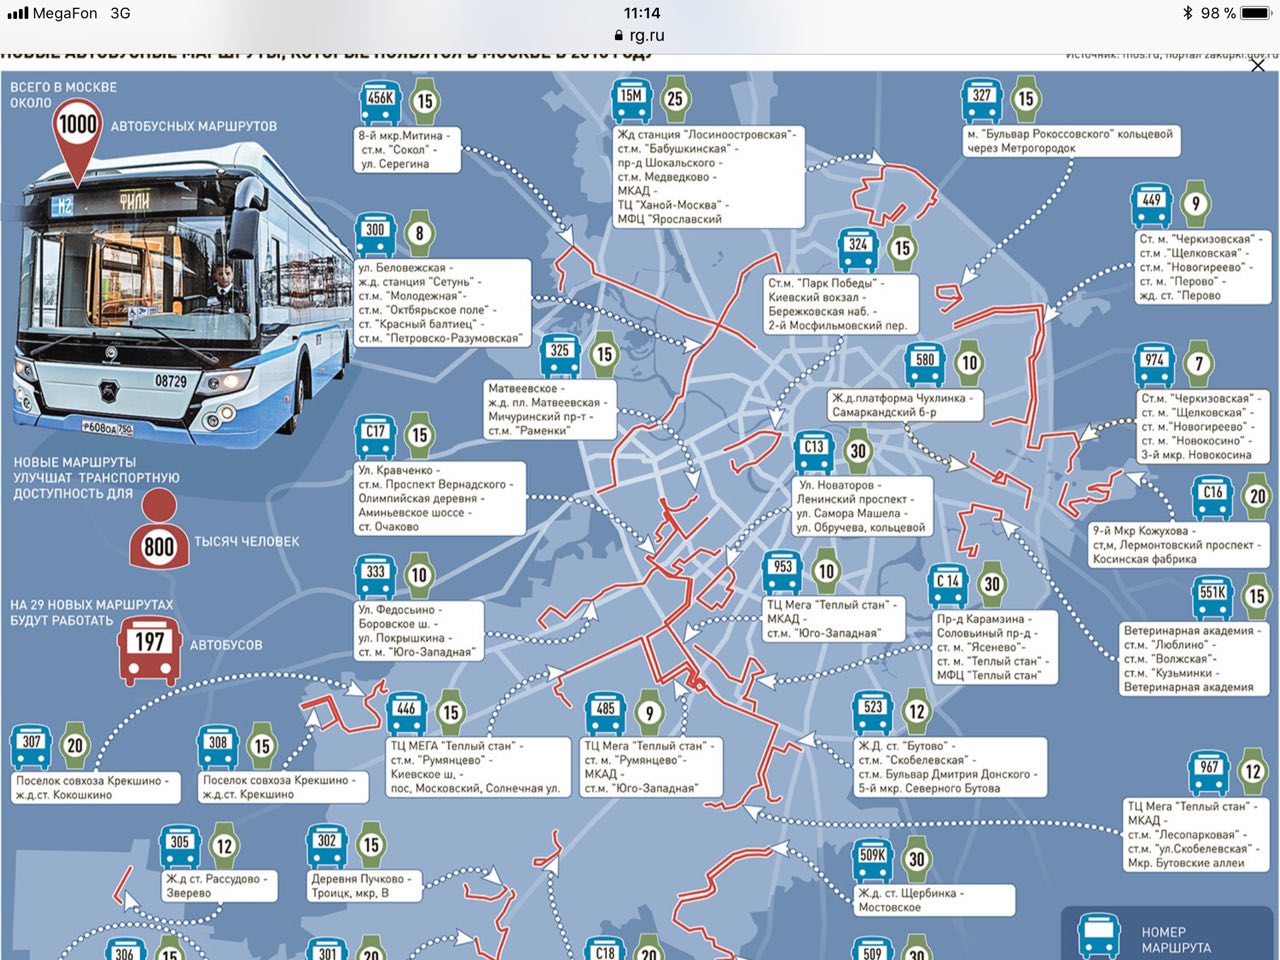 Автобус номер п. Карта автобусов. Схема автобусных маршрутов. Московский автобус маршруты. Схема общественного транспорта.